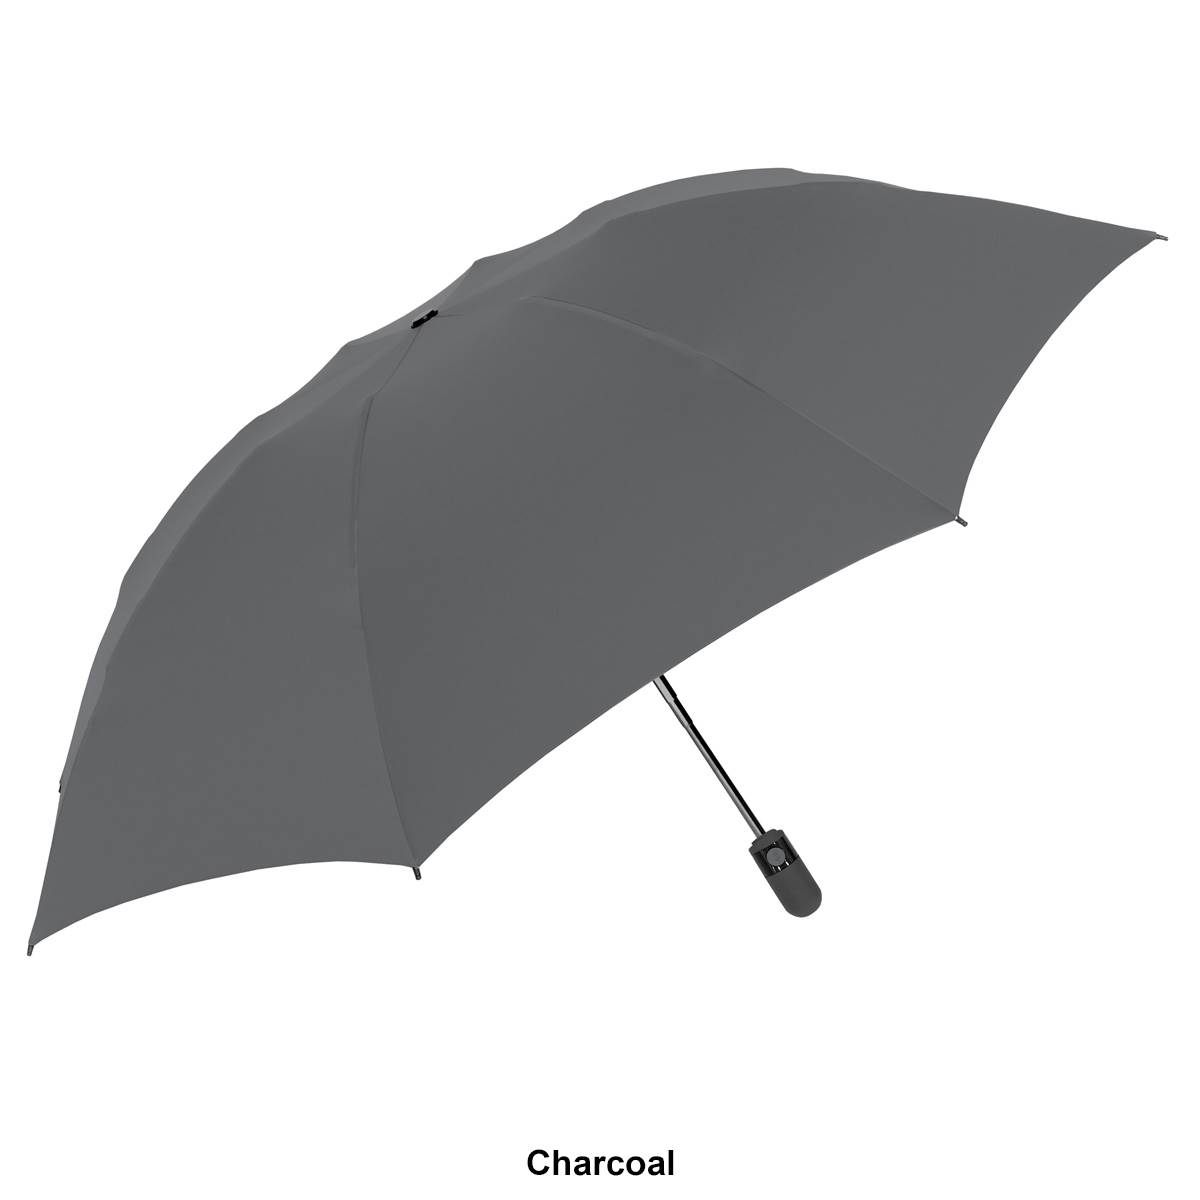 ShedRain Unbelievabrella(tm) Compact 47in. Solid Umbrella